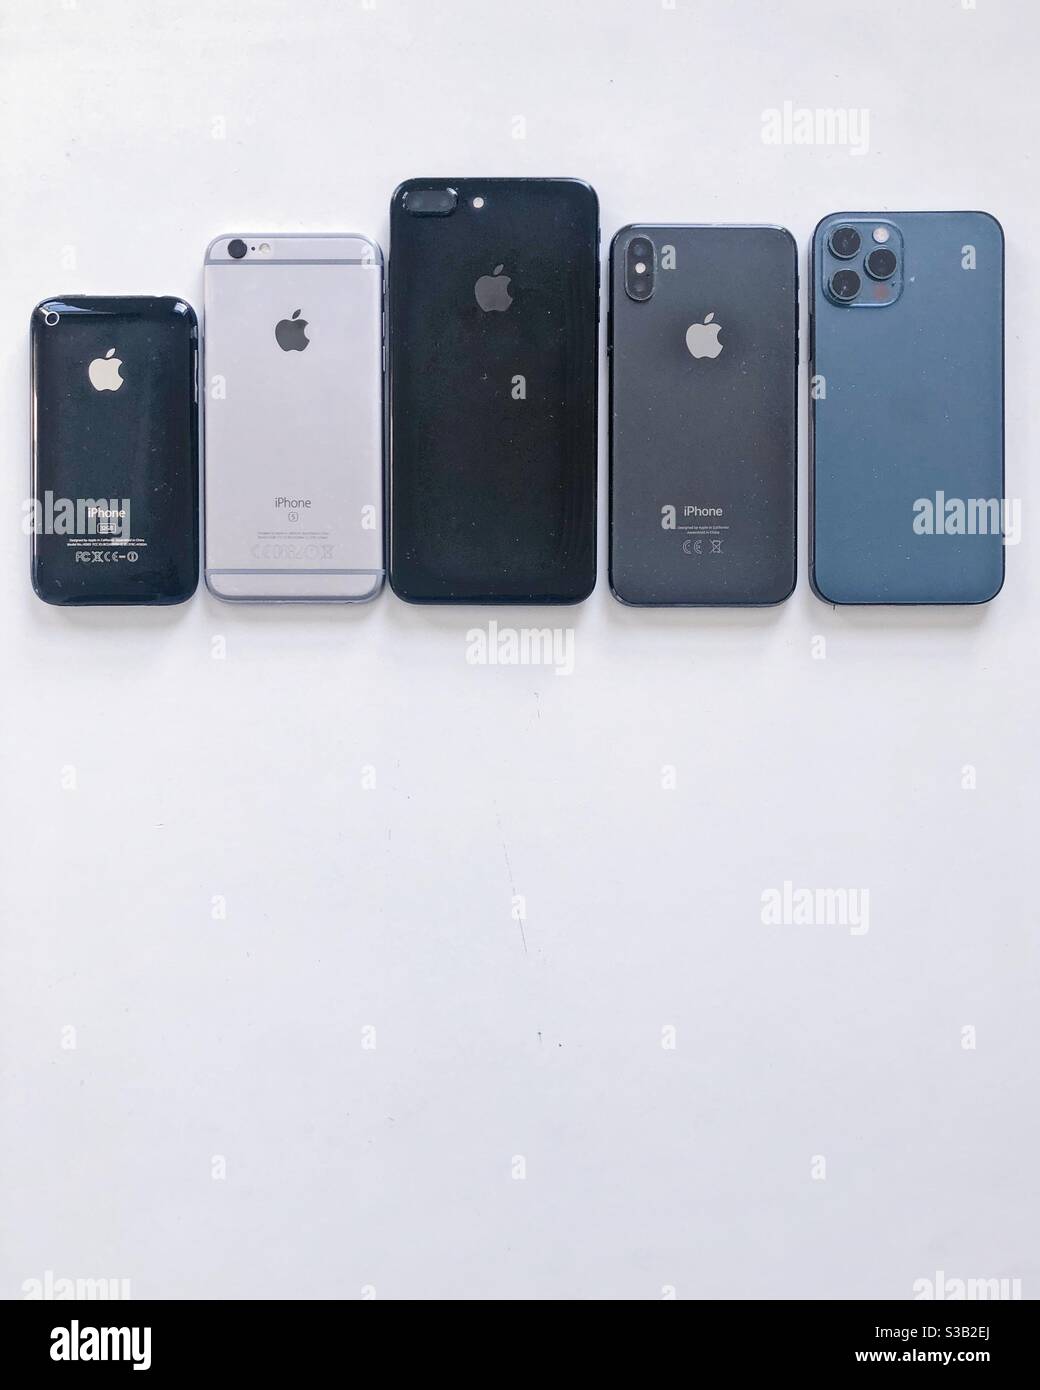 Apple iphone3 immagini e fotografie stock ad alta risoluzione - Alamy